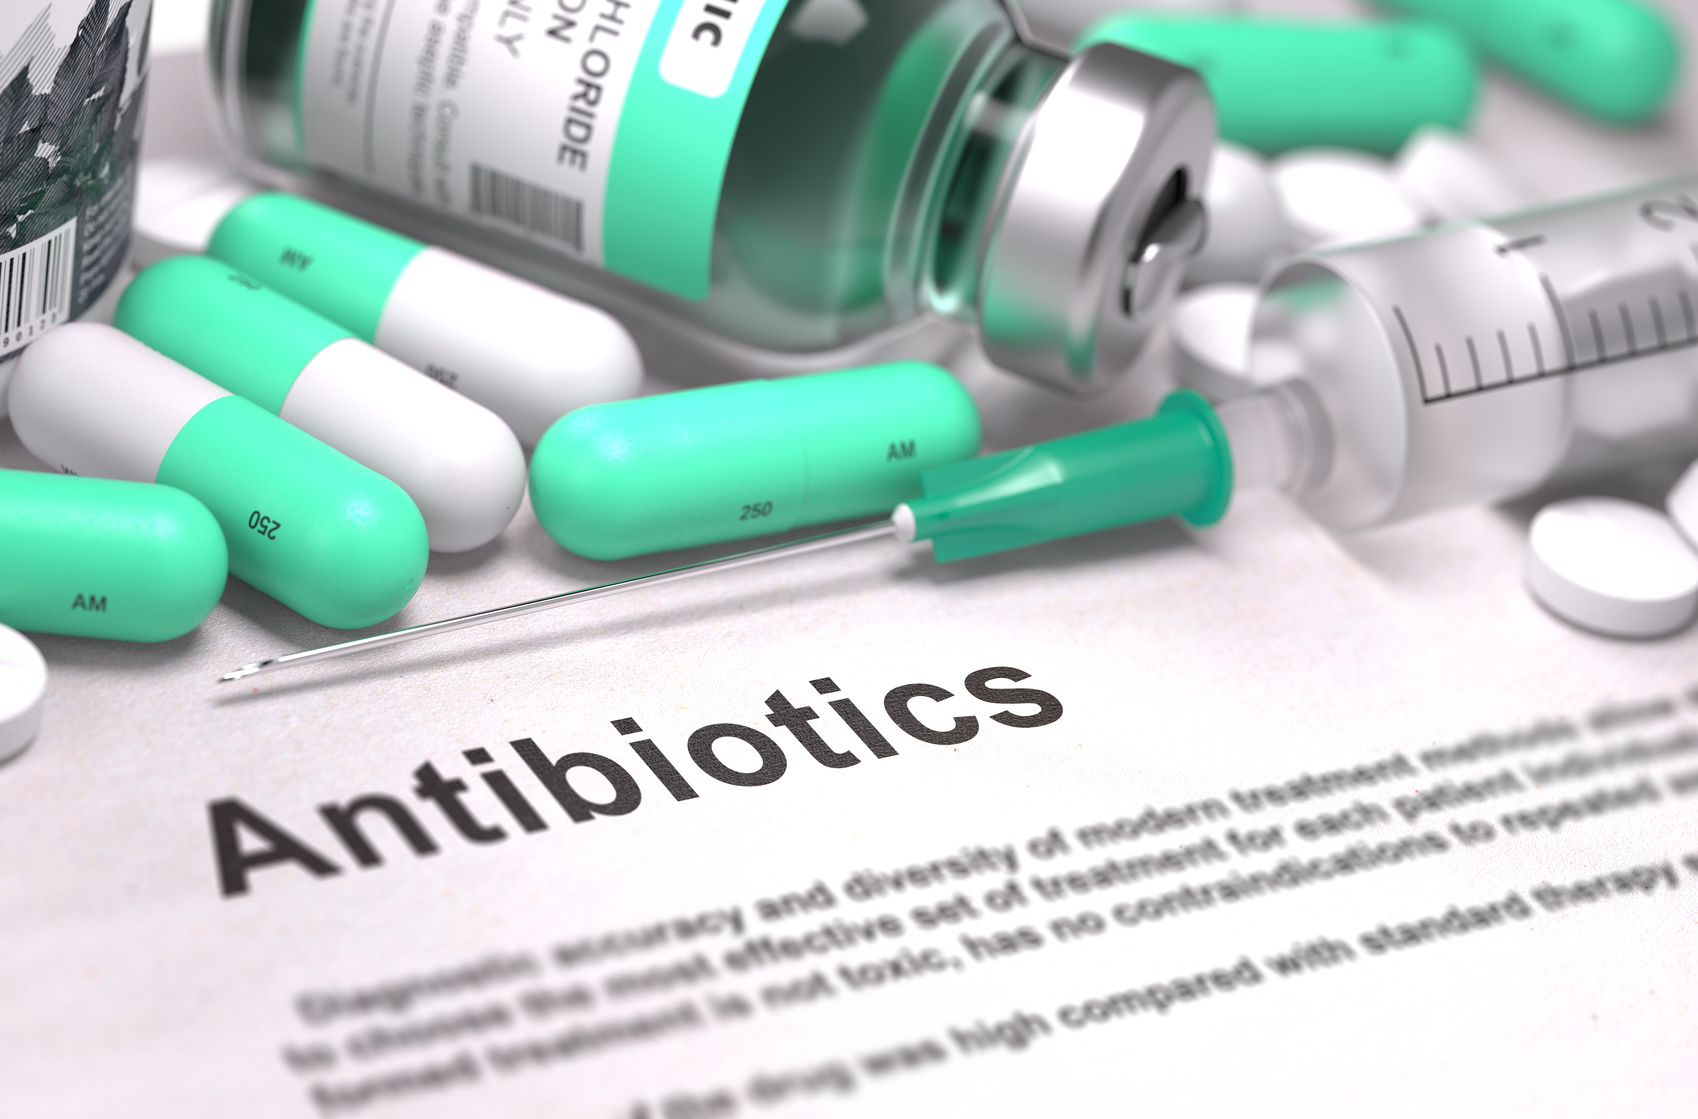 Pet antibiotics